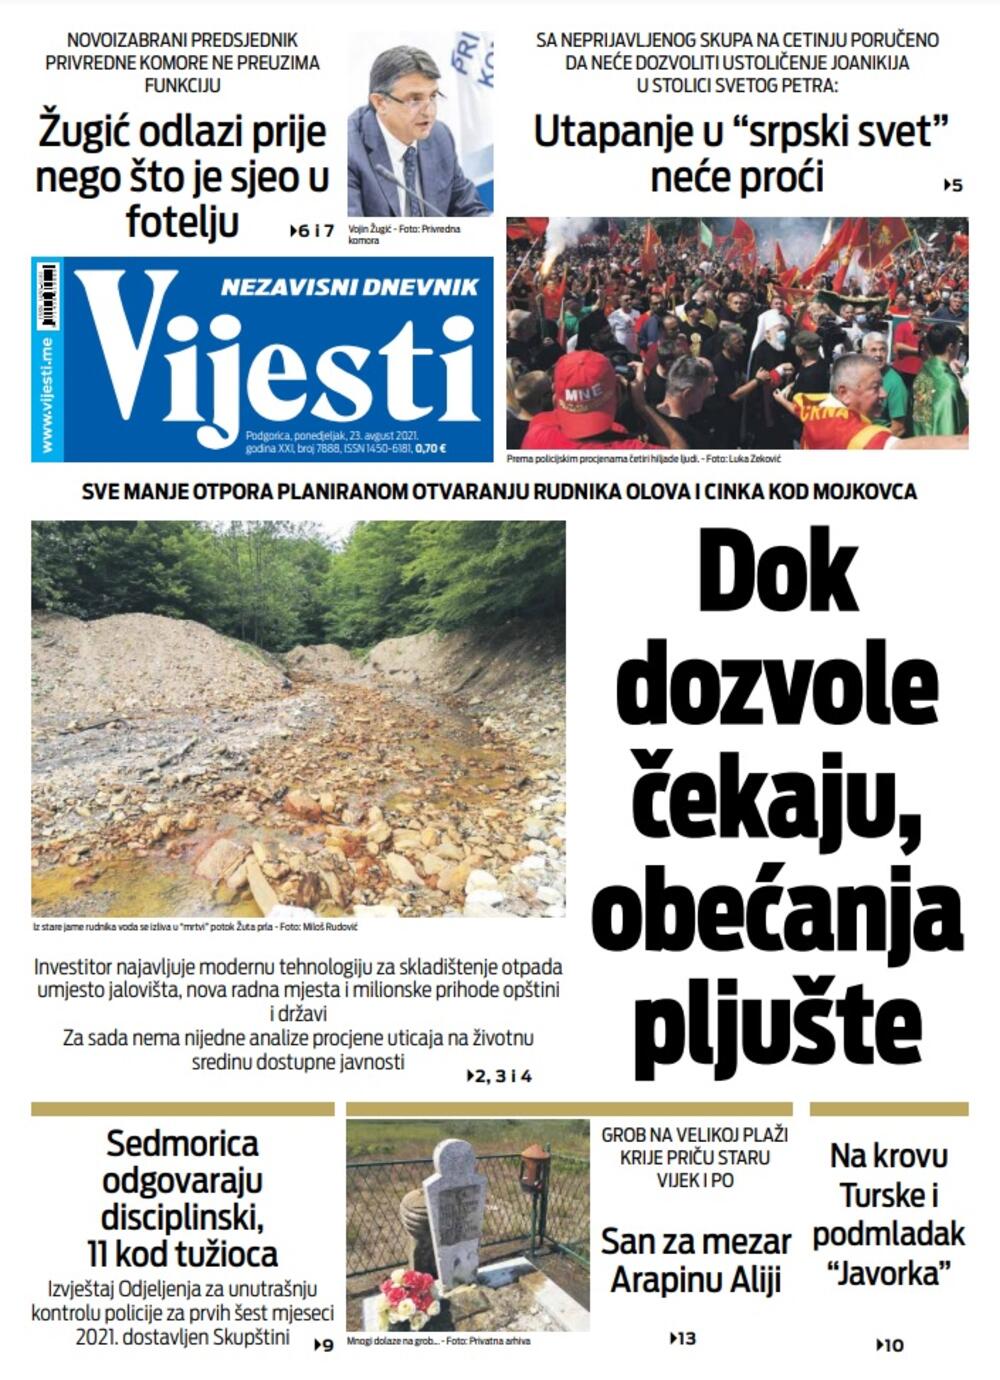 Naslovna strana "Vijesti" za 23. avgust 2021. godine, Foto: Vijesti